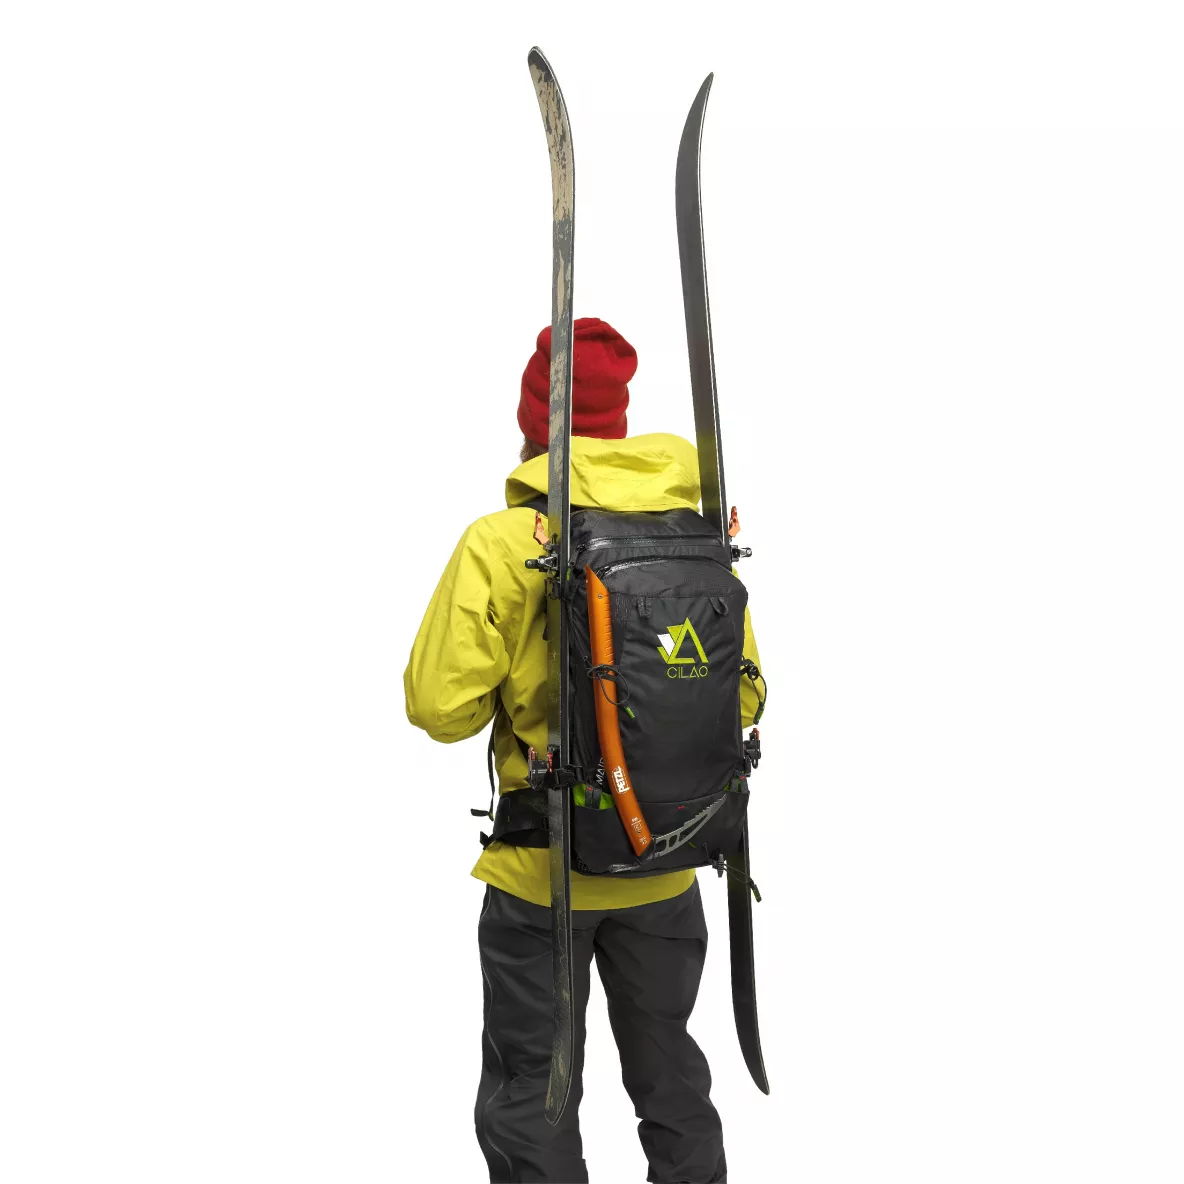 Sacs à dos de ski de randonnée